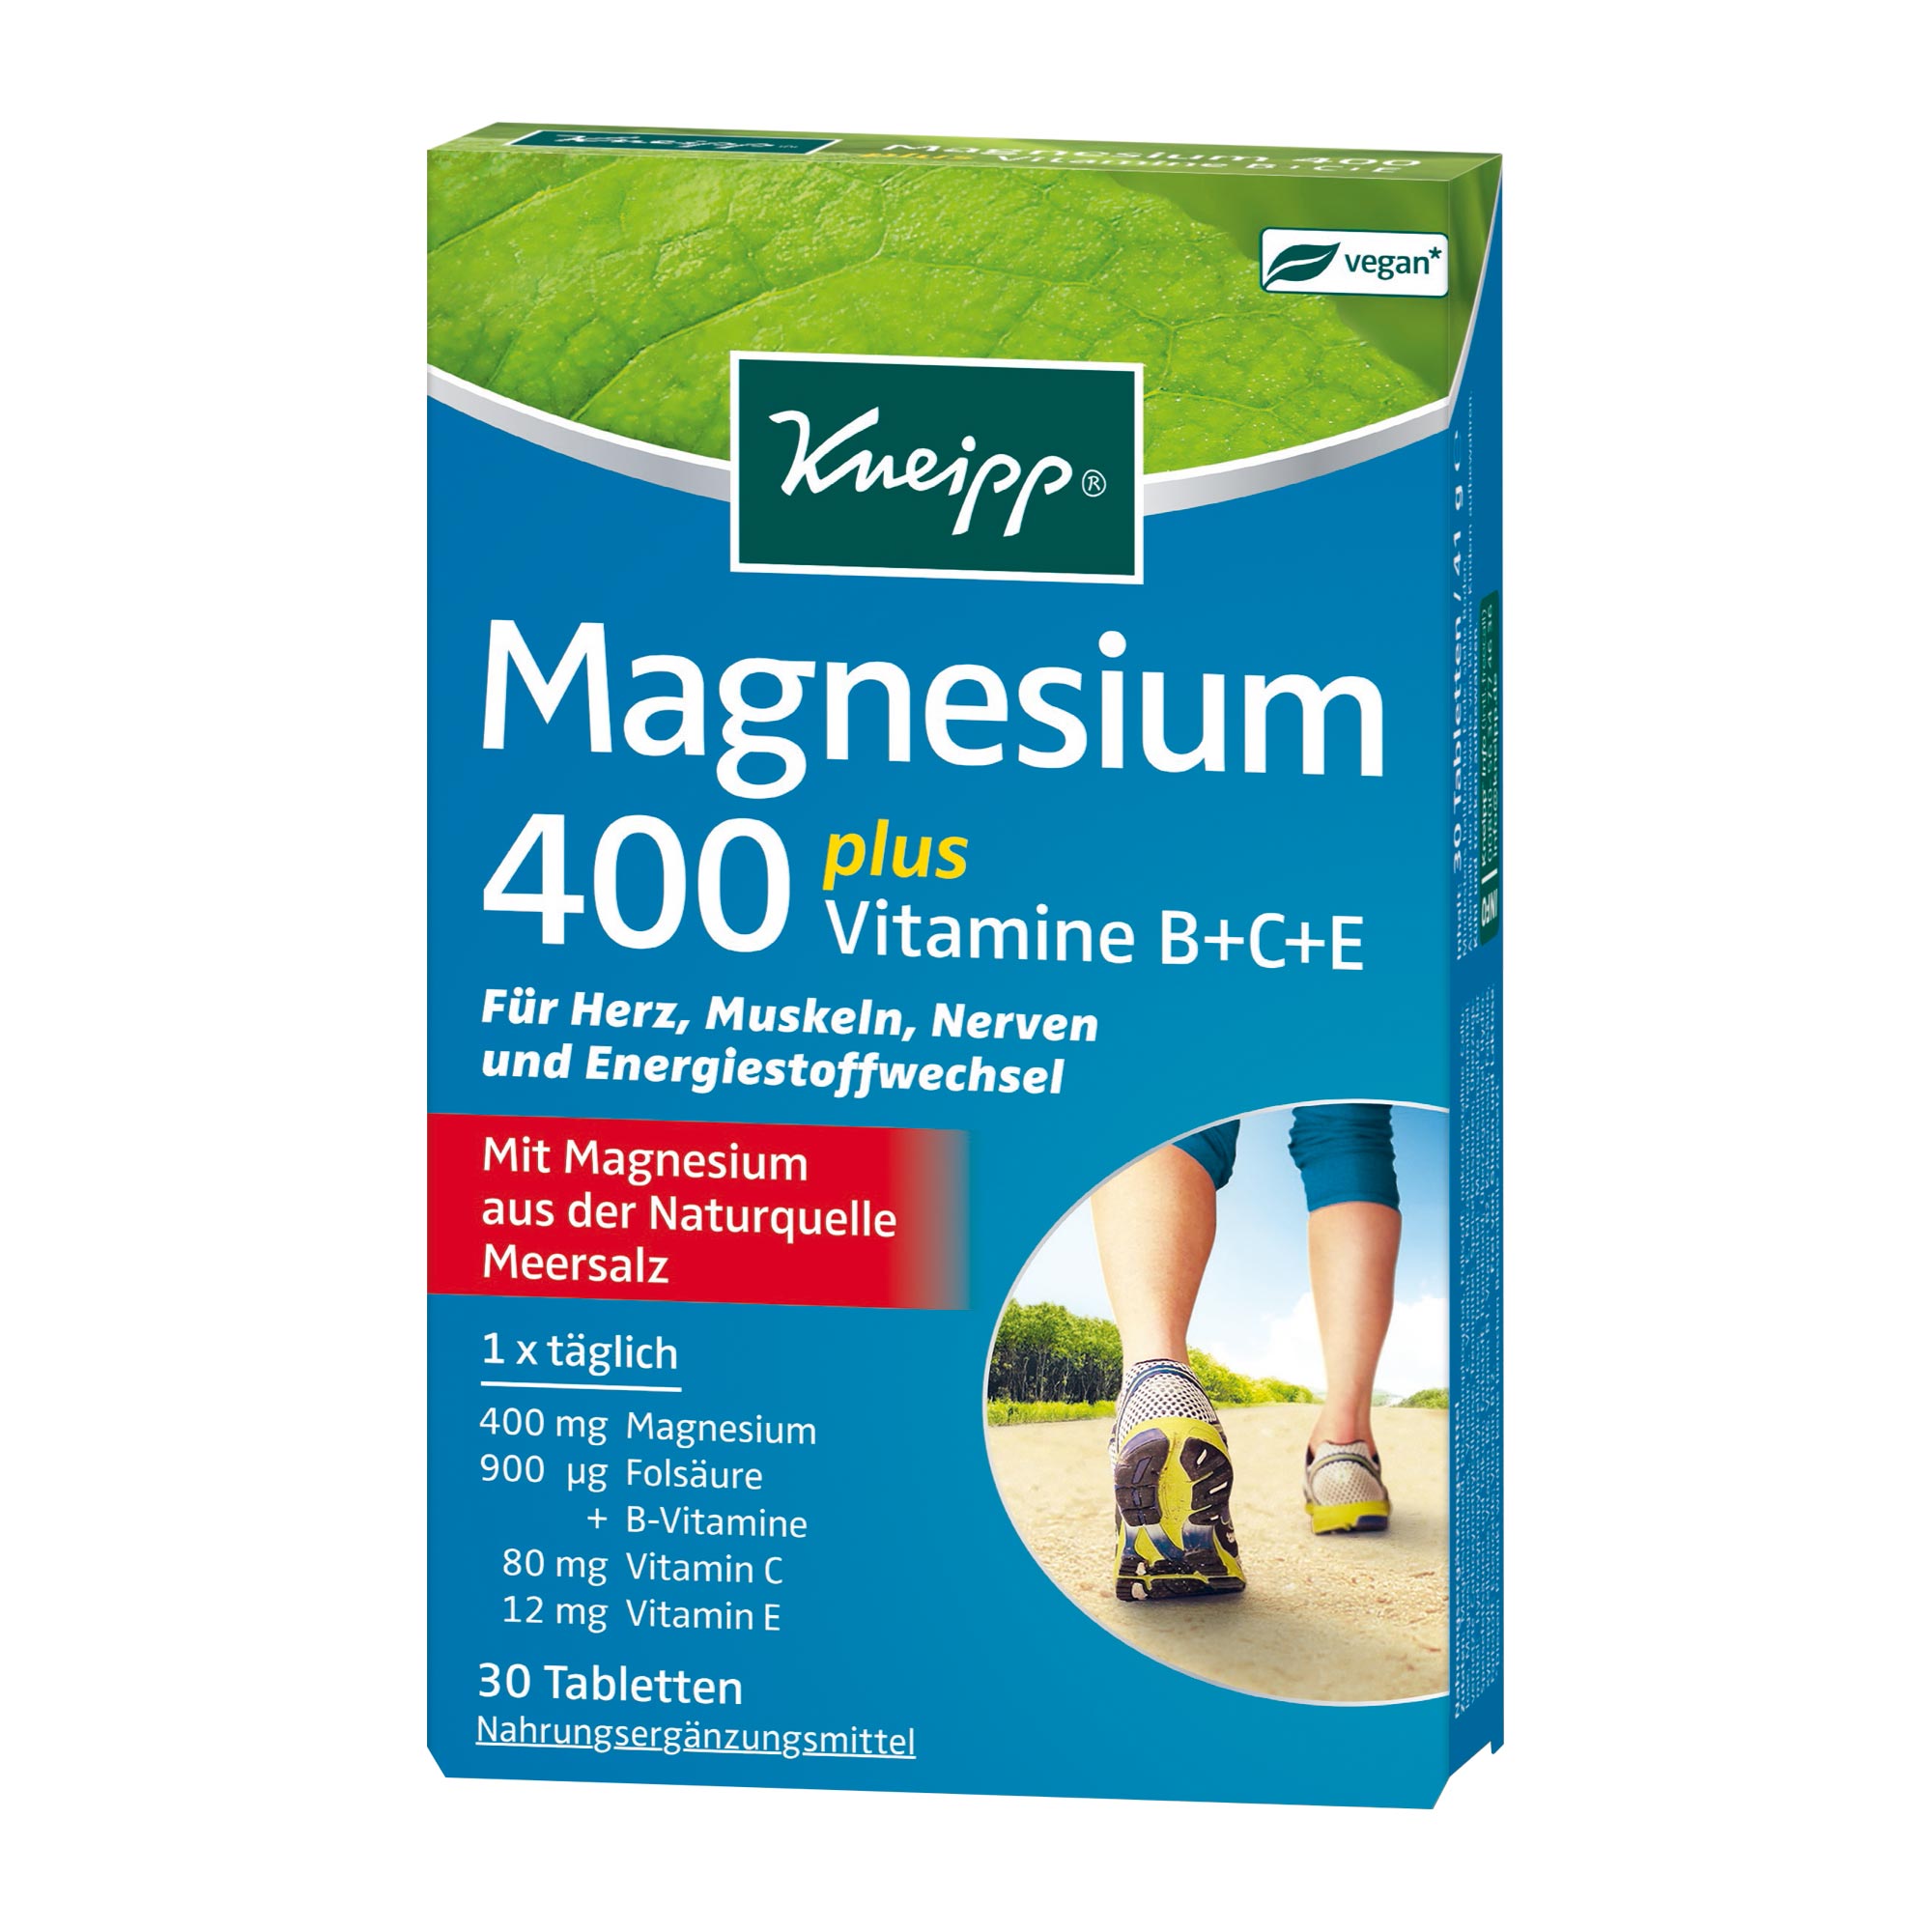 Nahrungsergänzungsmittel mit Magnesium, Folsäure, B-Vitaminen, Vitamin C und E.